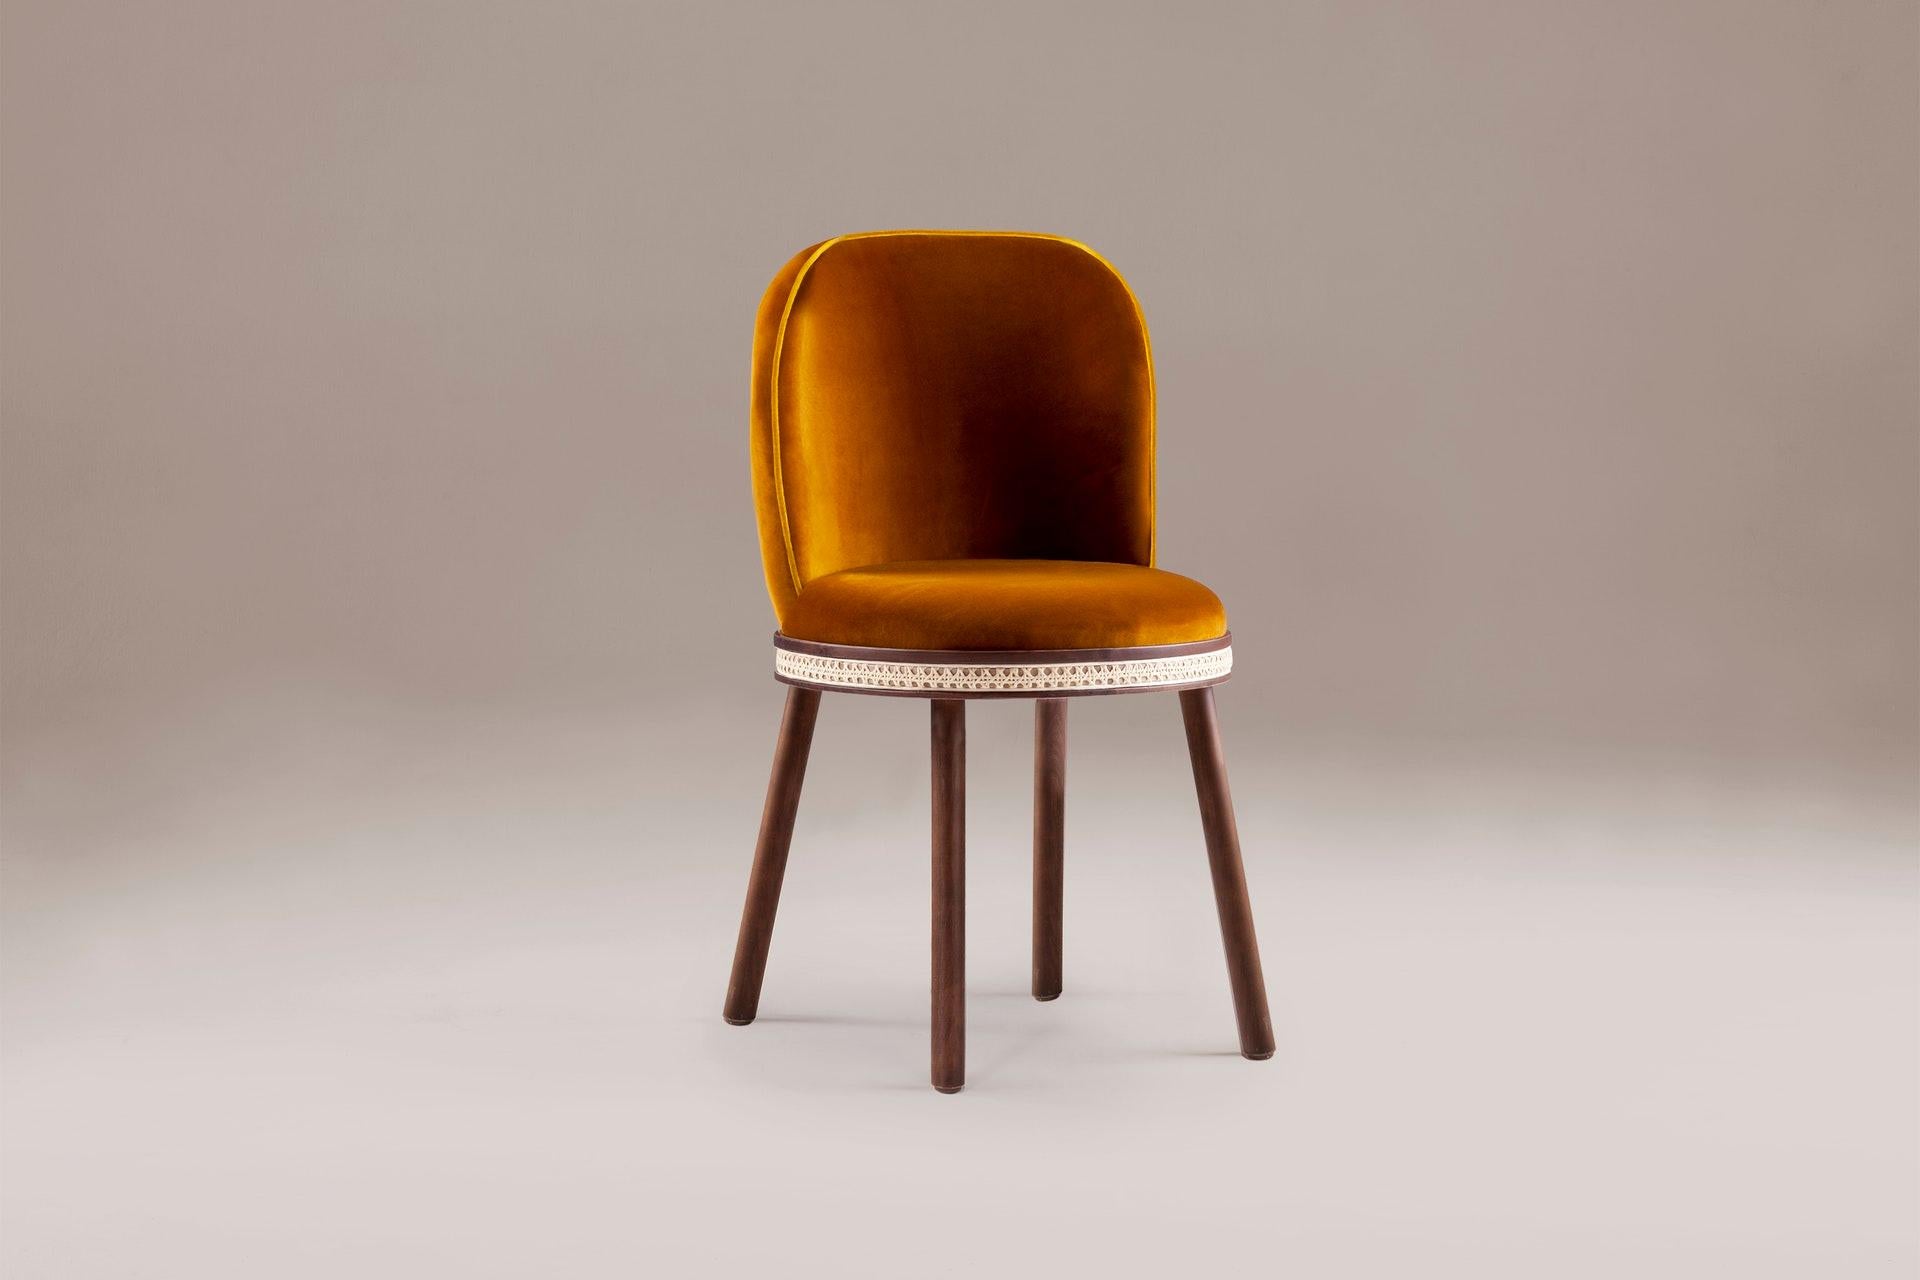 Portuguese Alma Chair by Dooq